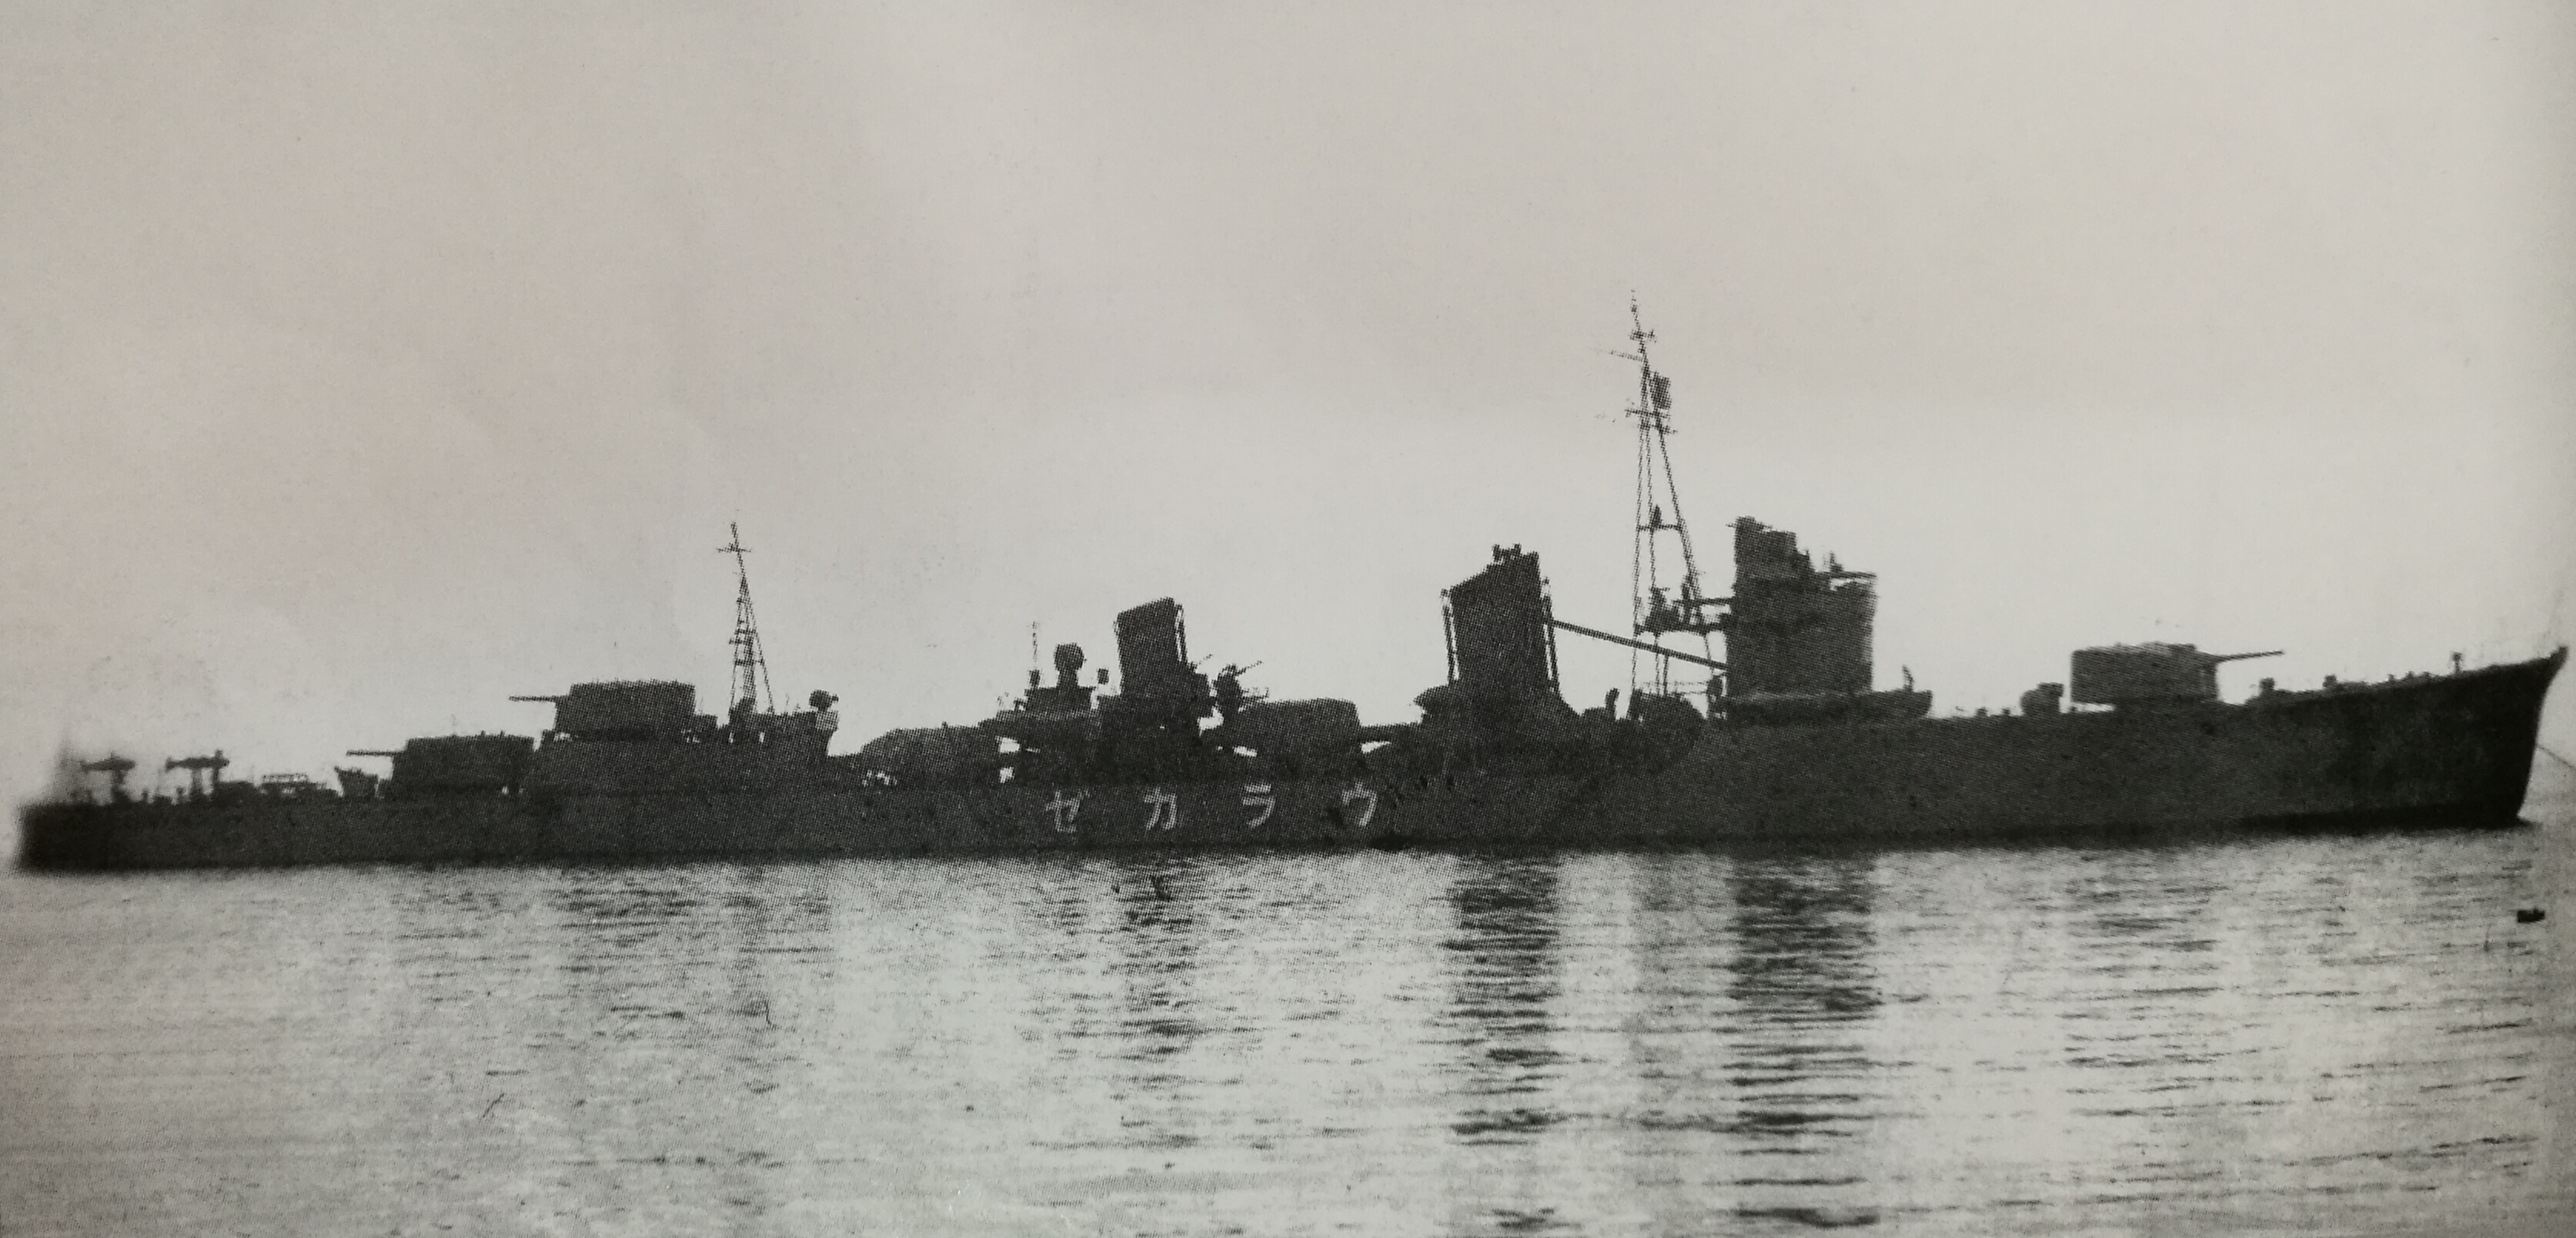 攝於1940年12月15日在藤永田造船廠交接後的浦風